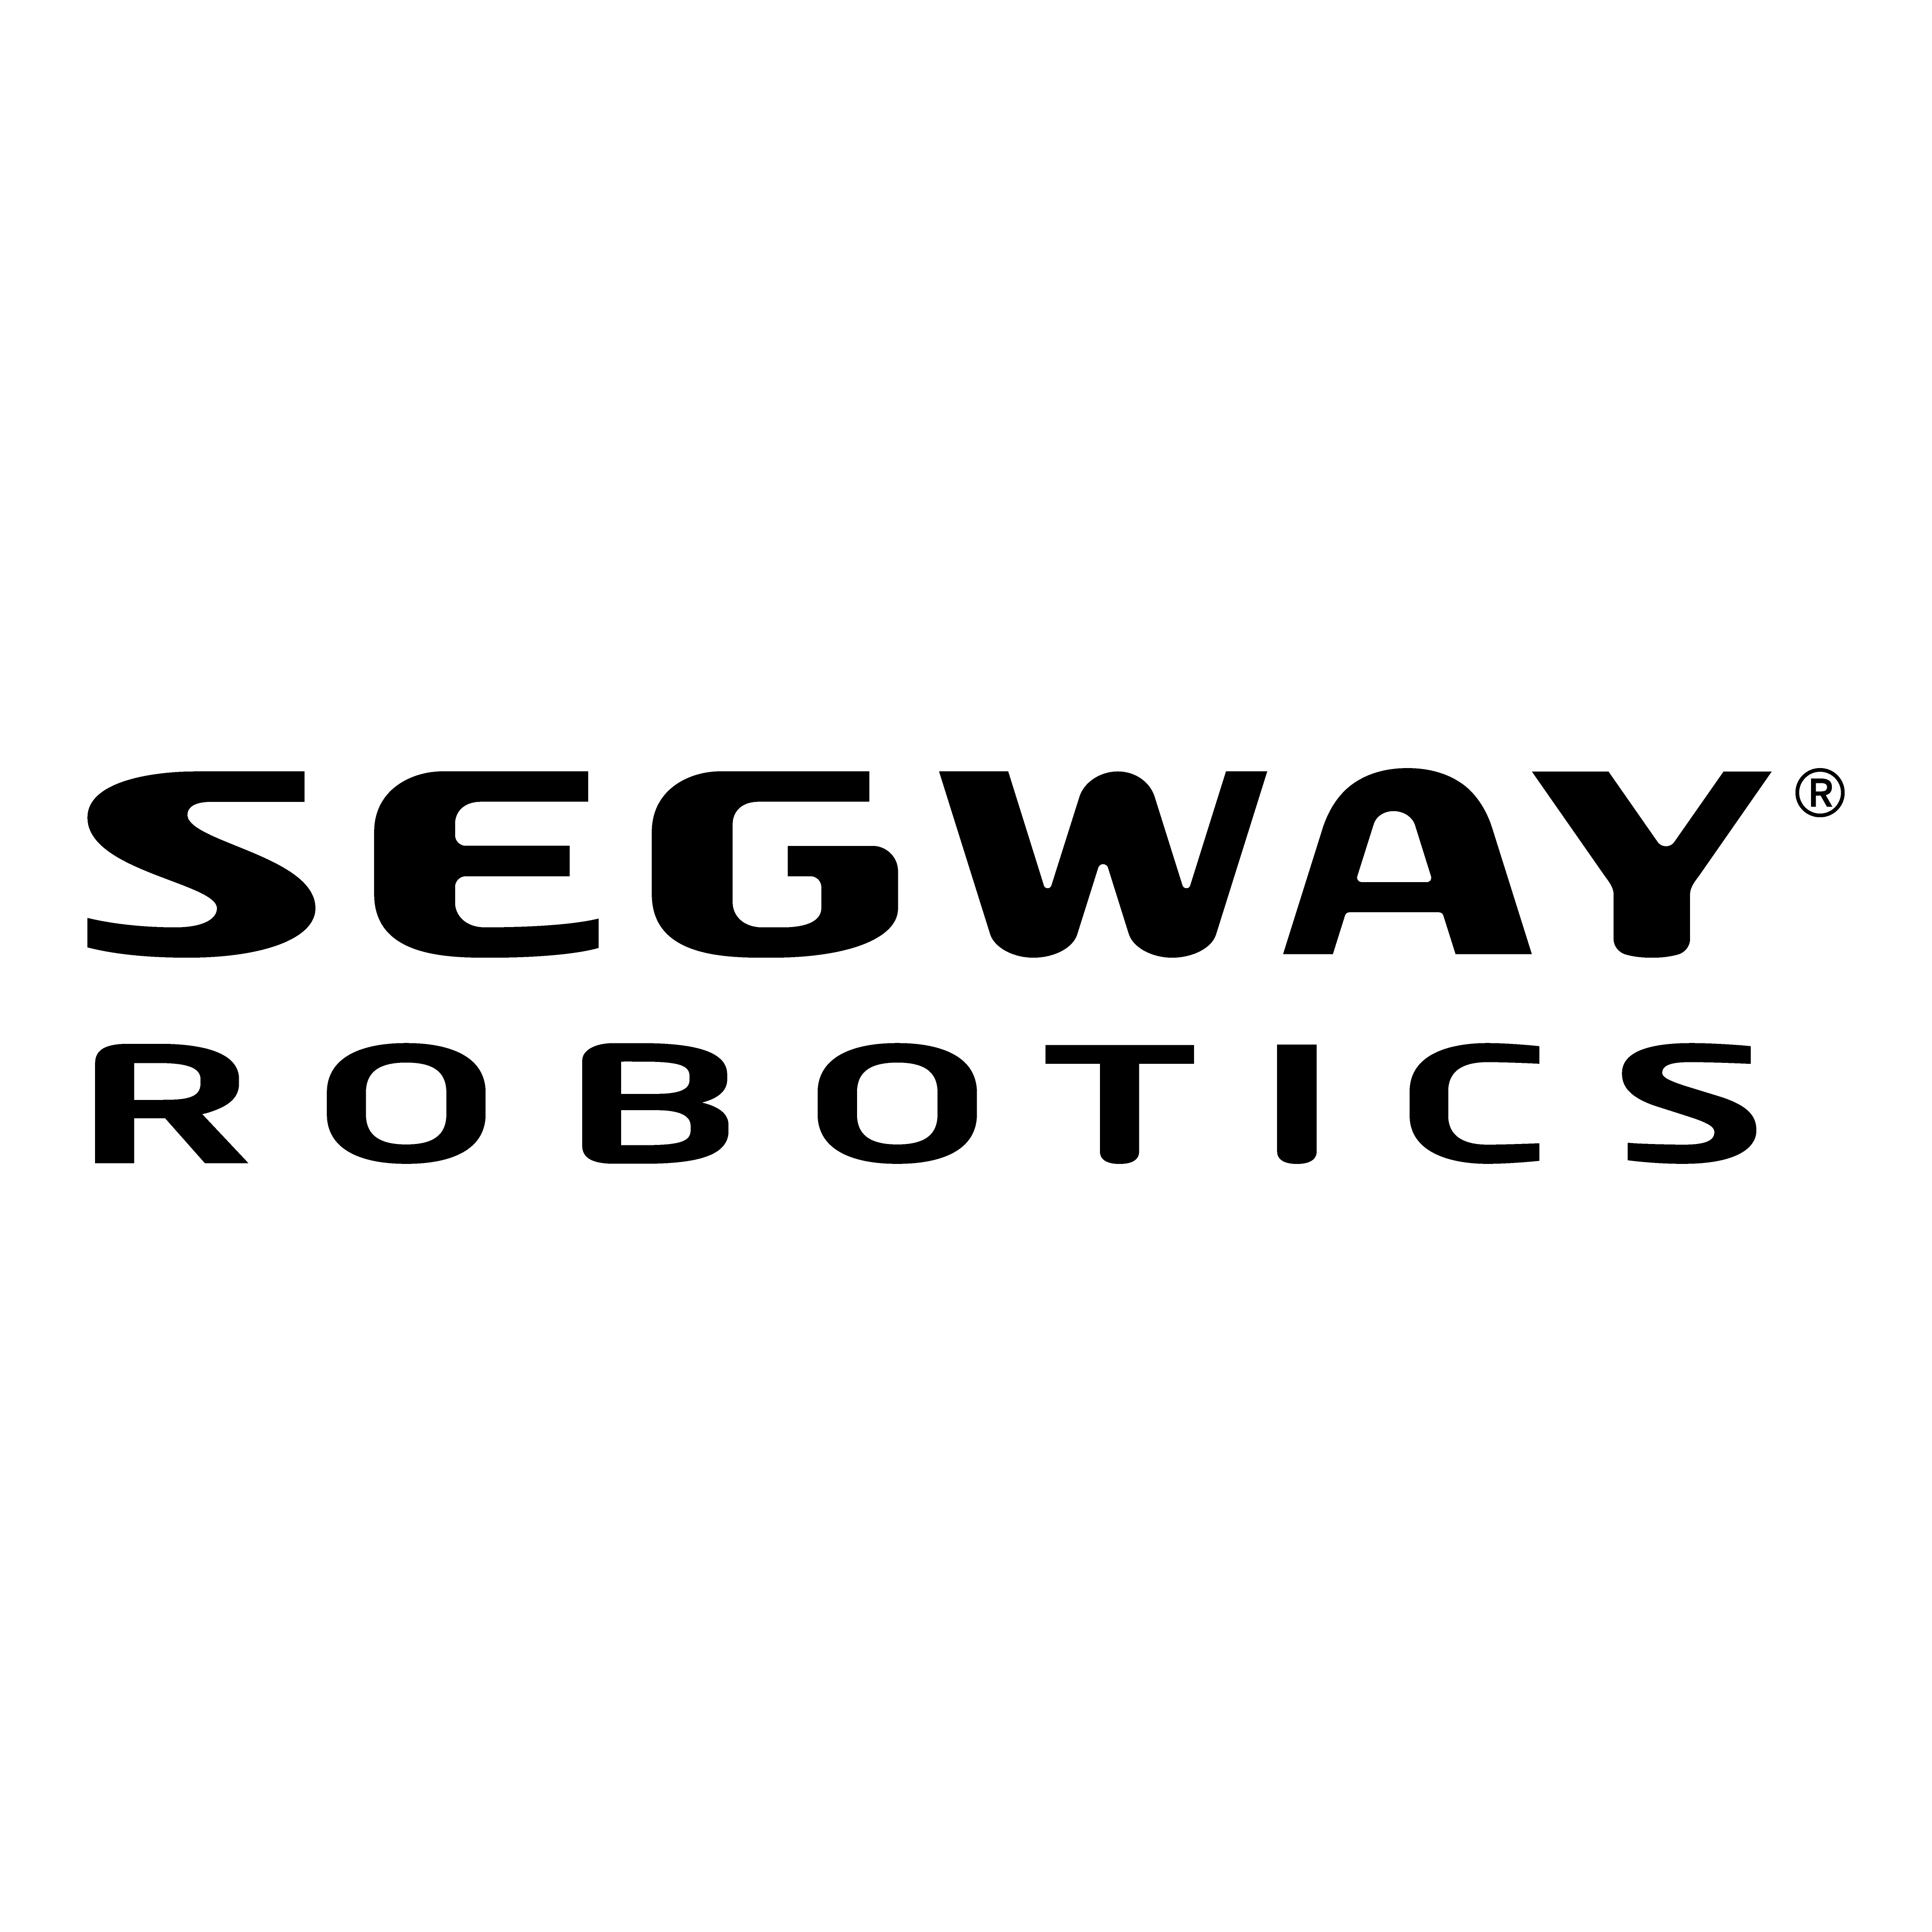 segway robotics logo